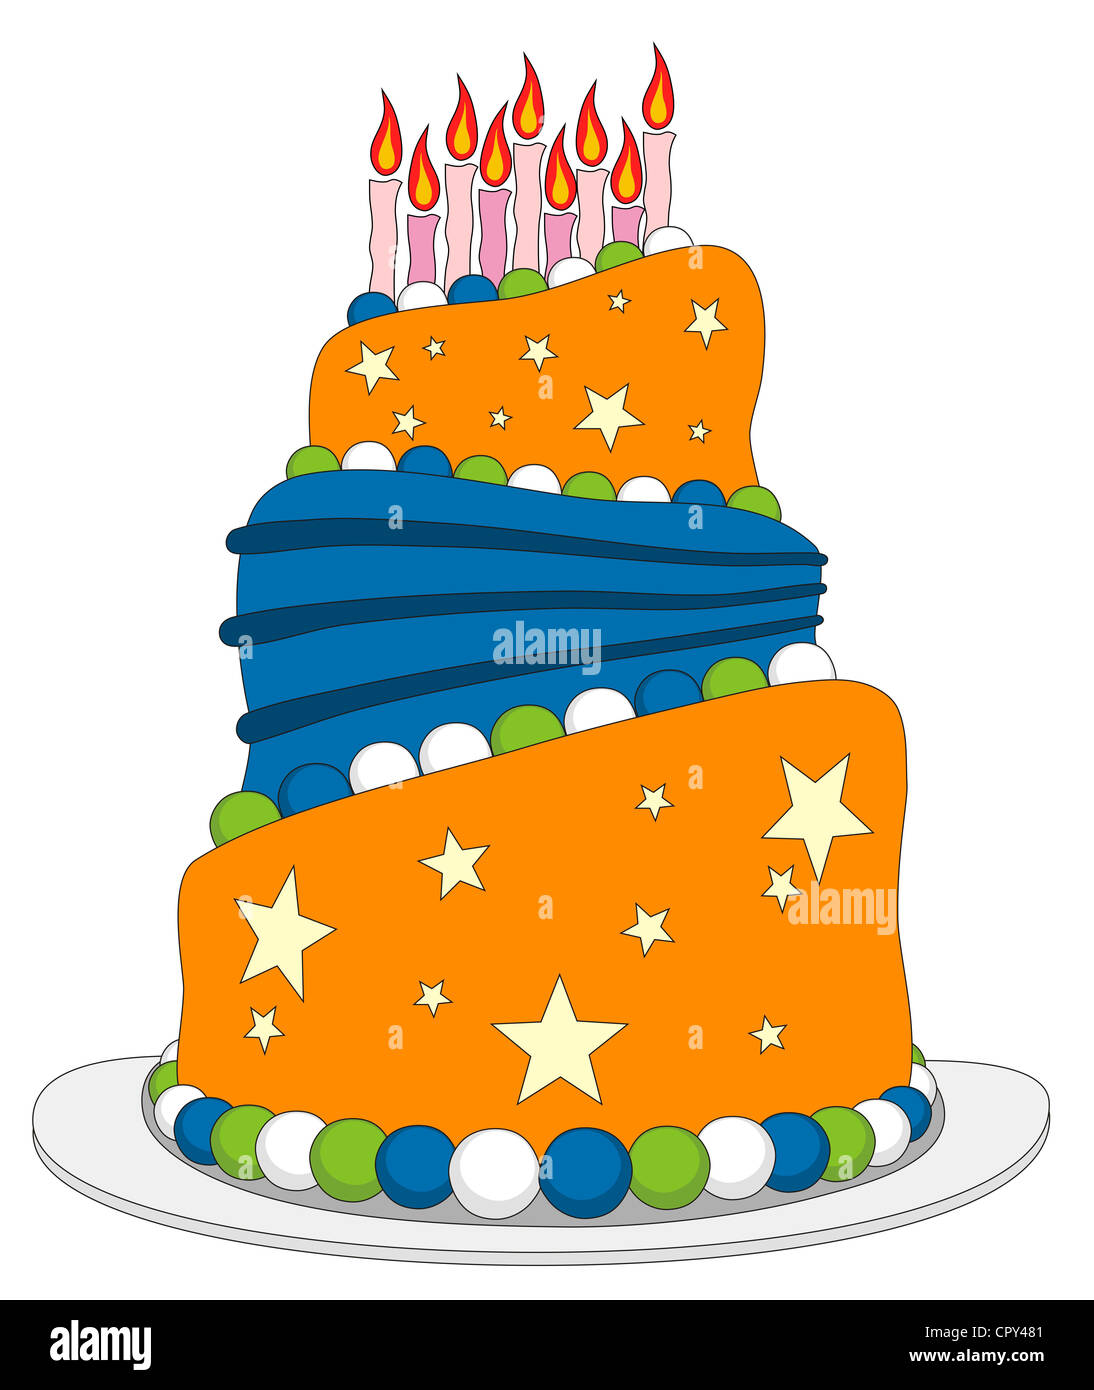 Illustrazione Vettoriale di torta di compleanno in stile cartone animato  Foto stock - Alamy